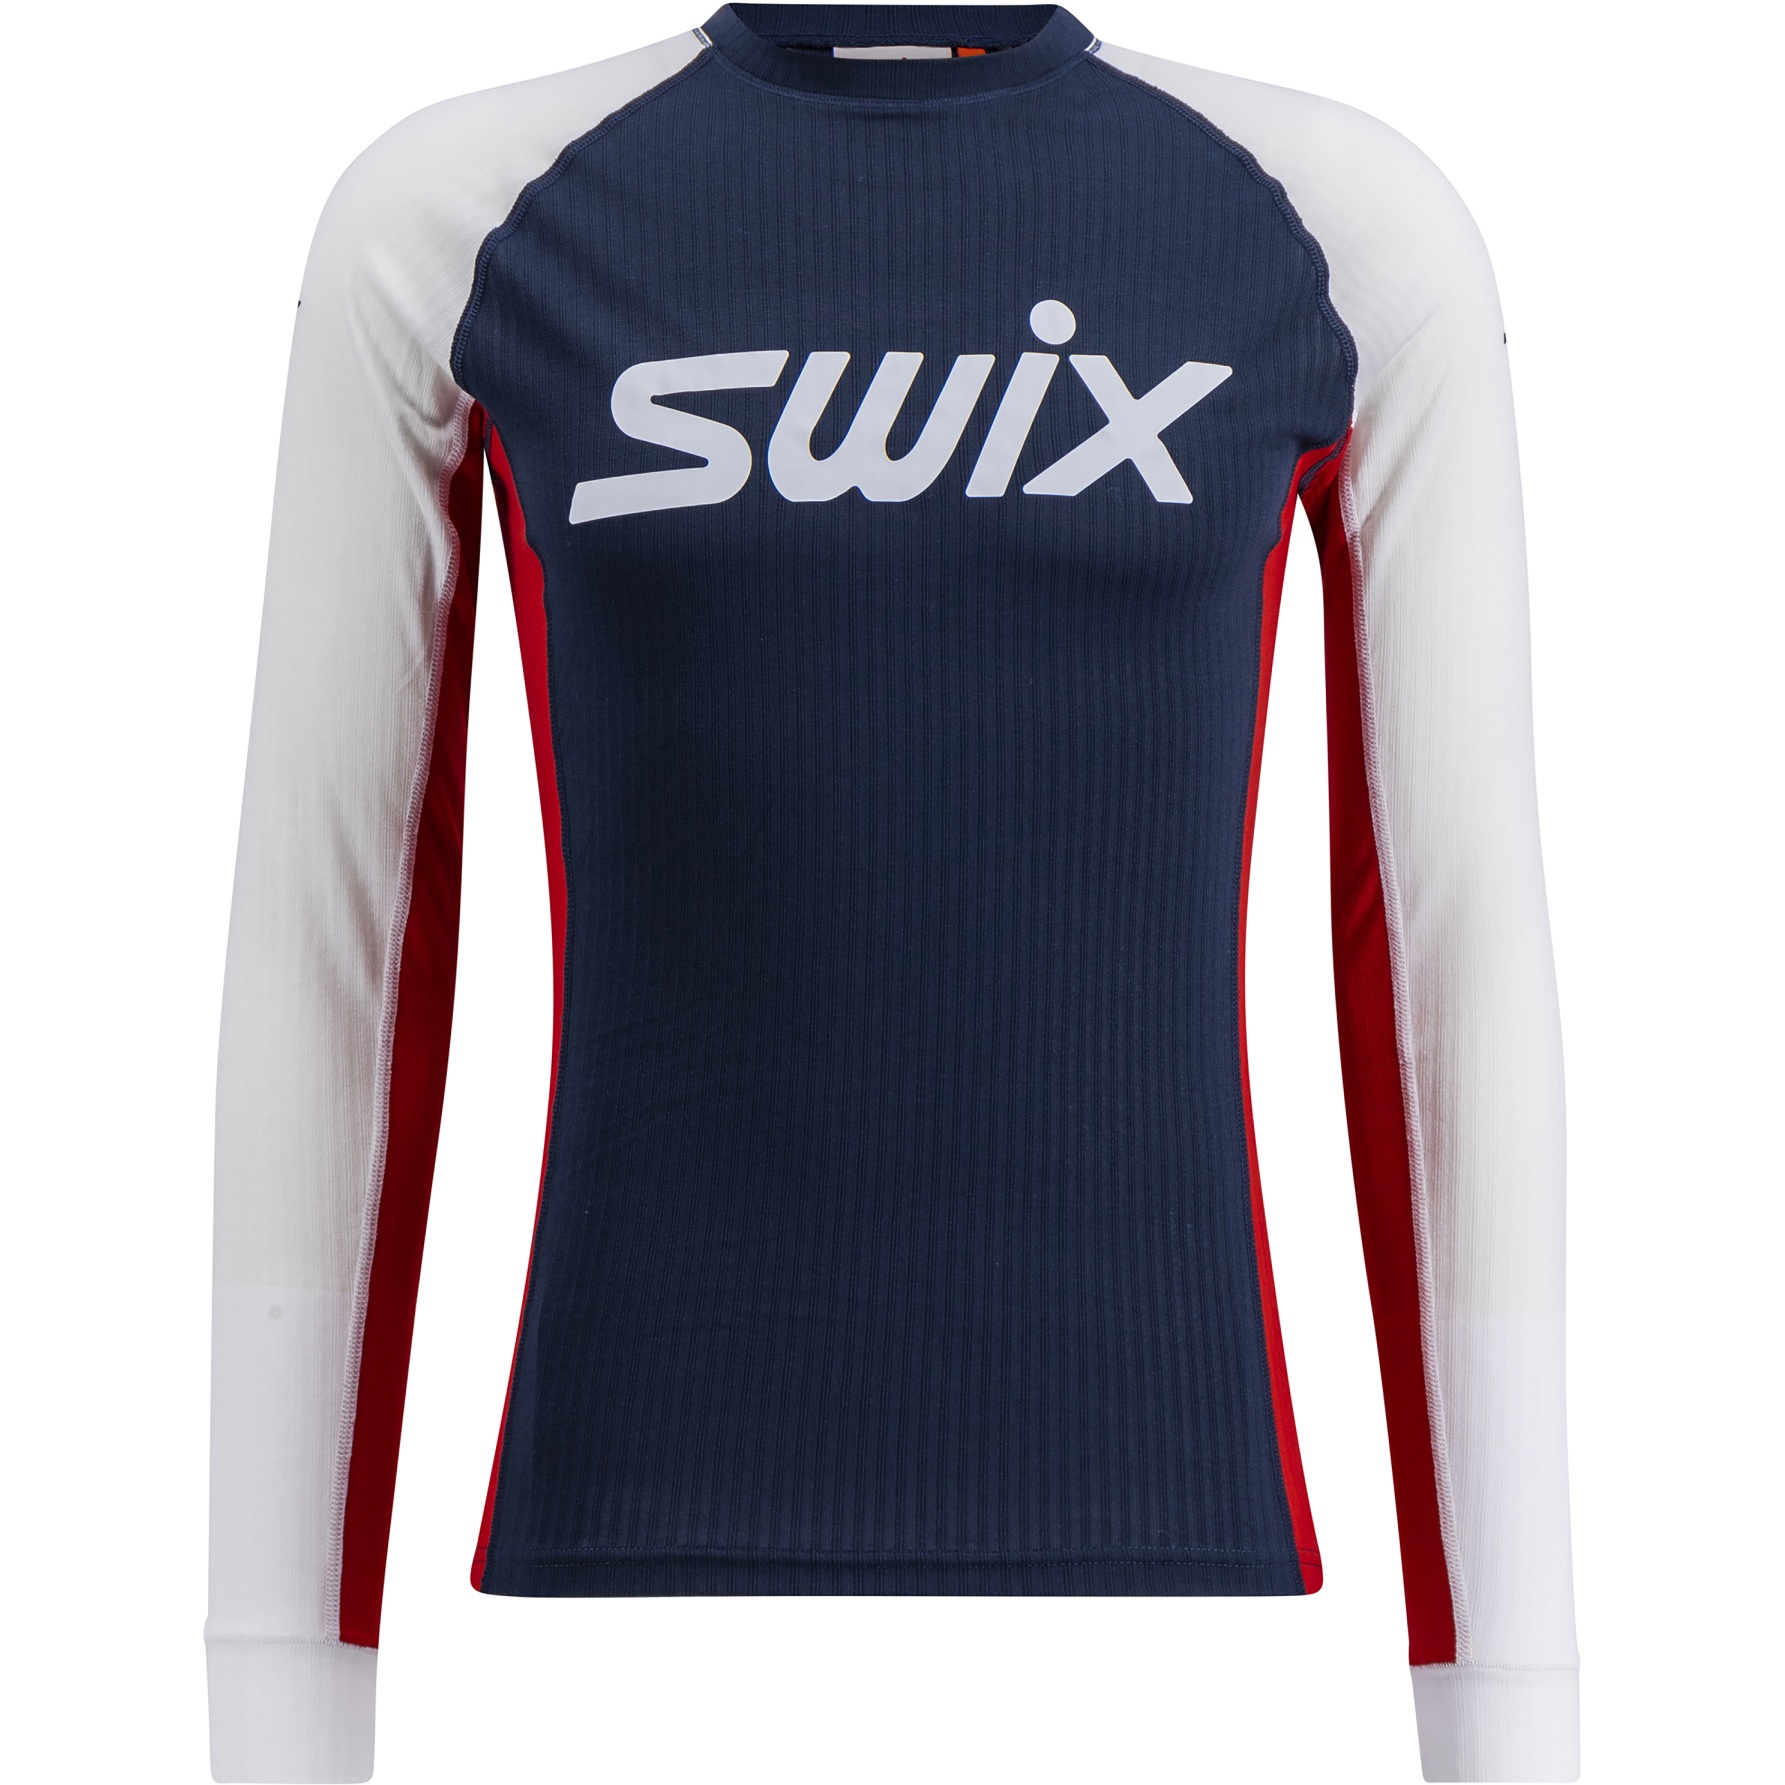 Produktbild von Swix RaceX Classic Langarmshirt Herren - Dark Navy/Bright White